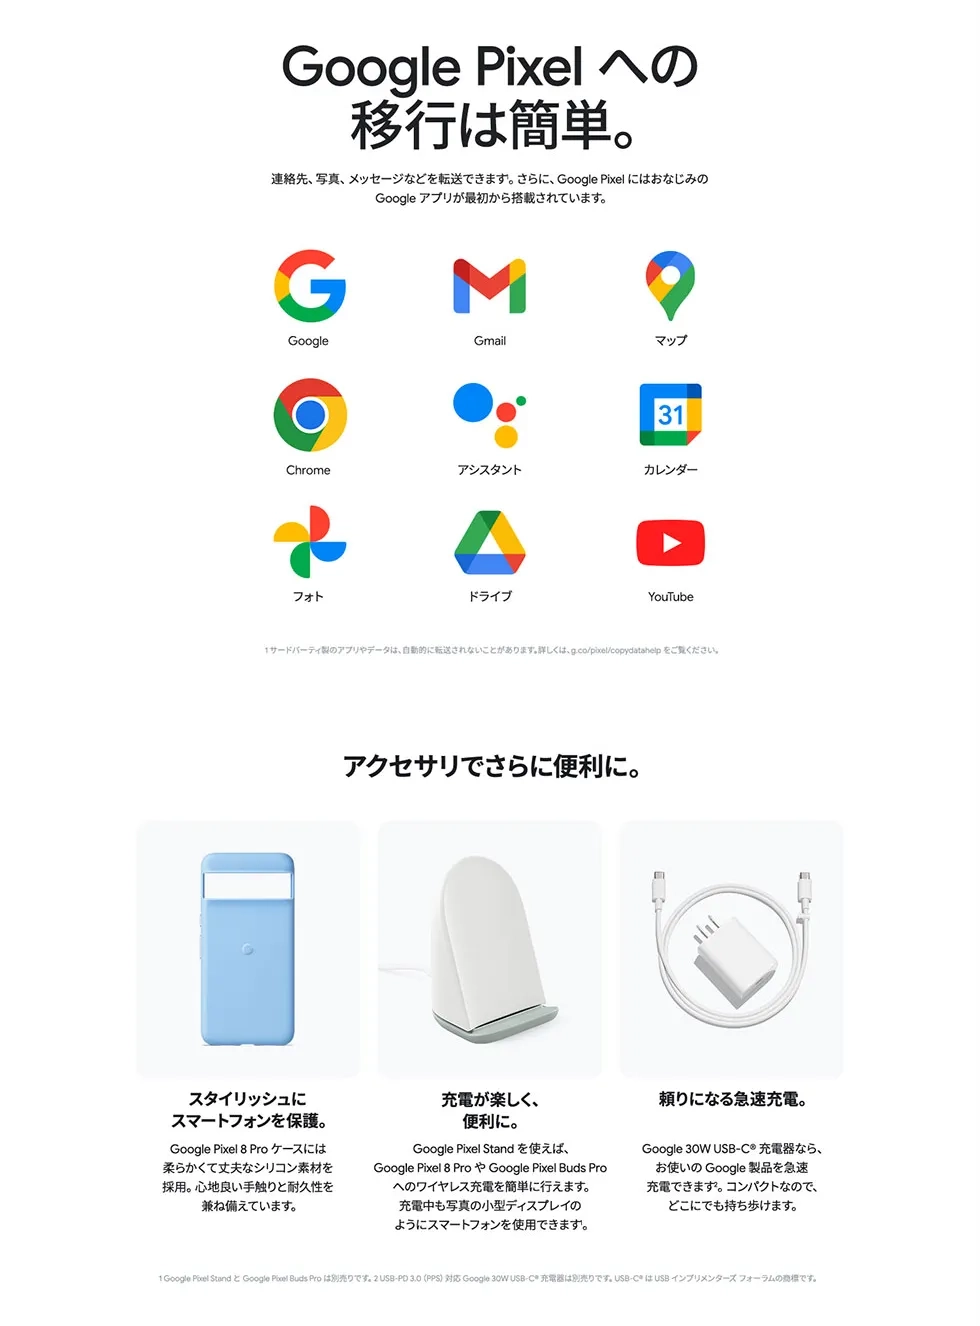 Google Pixel への移行は簡単。